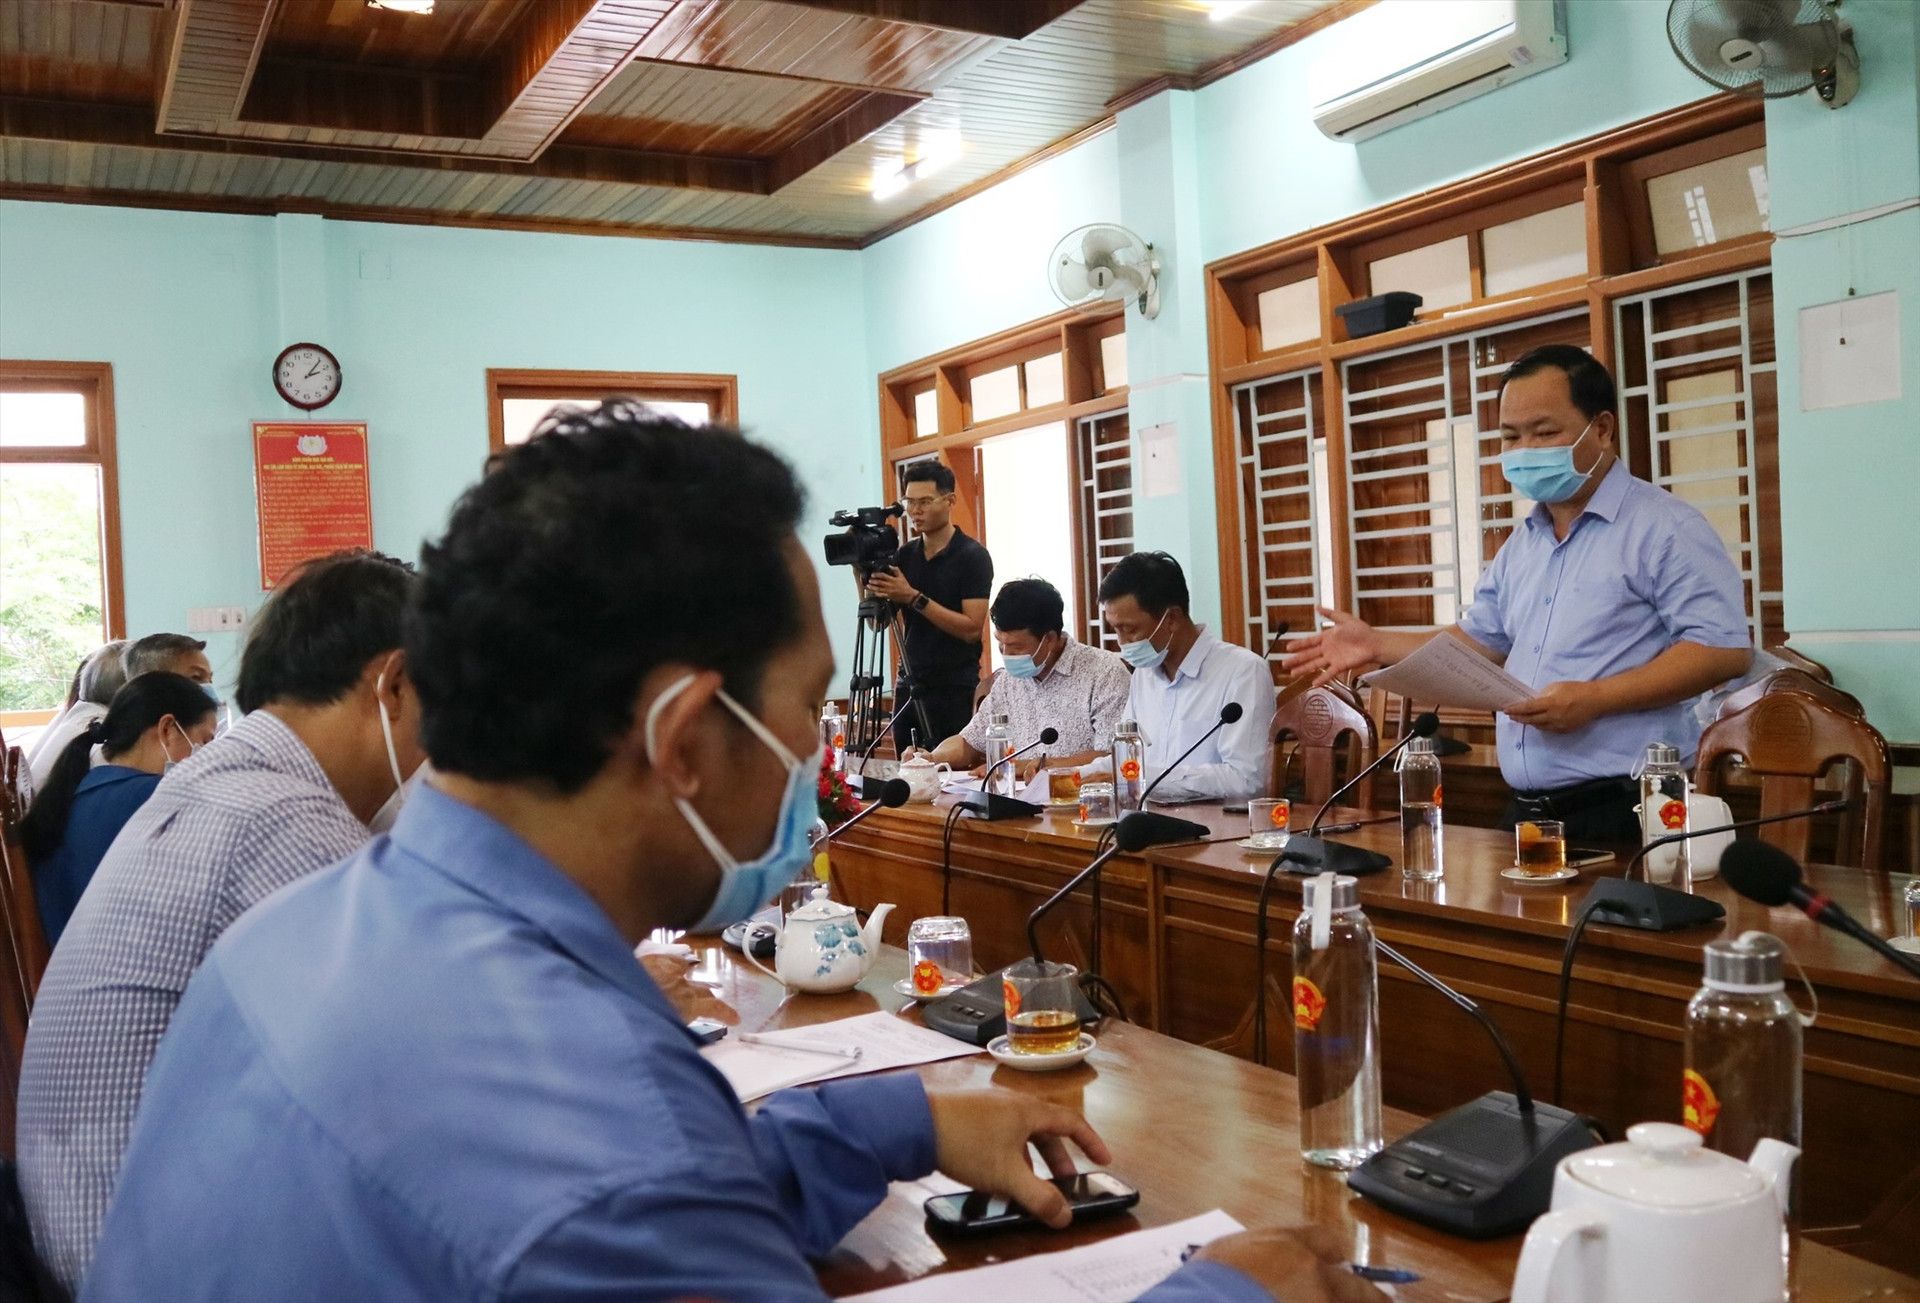 Đồng chí Nguyễn Hồng Quang phát biểu chỉ đạo nhiều nội dung quan trọng tại buổi làm việc với lãnh đạo huyện Đông Giang vào chiều nay 18.5. Ảnh: A.N